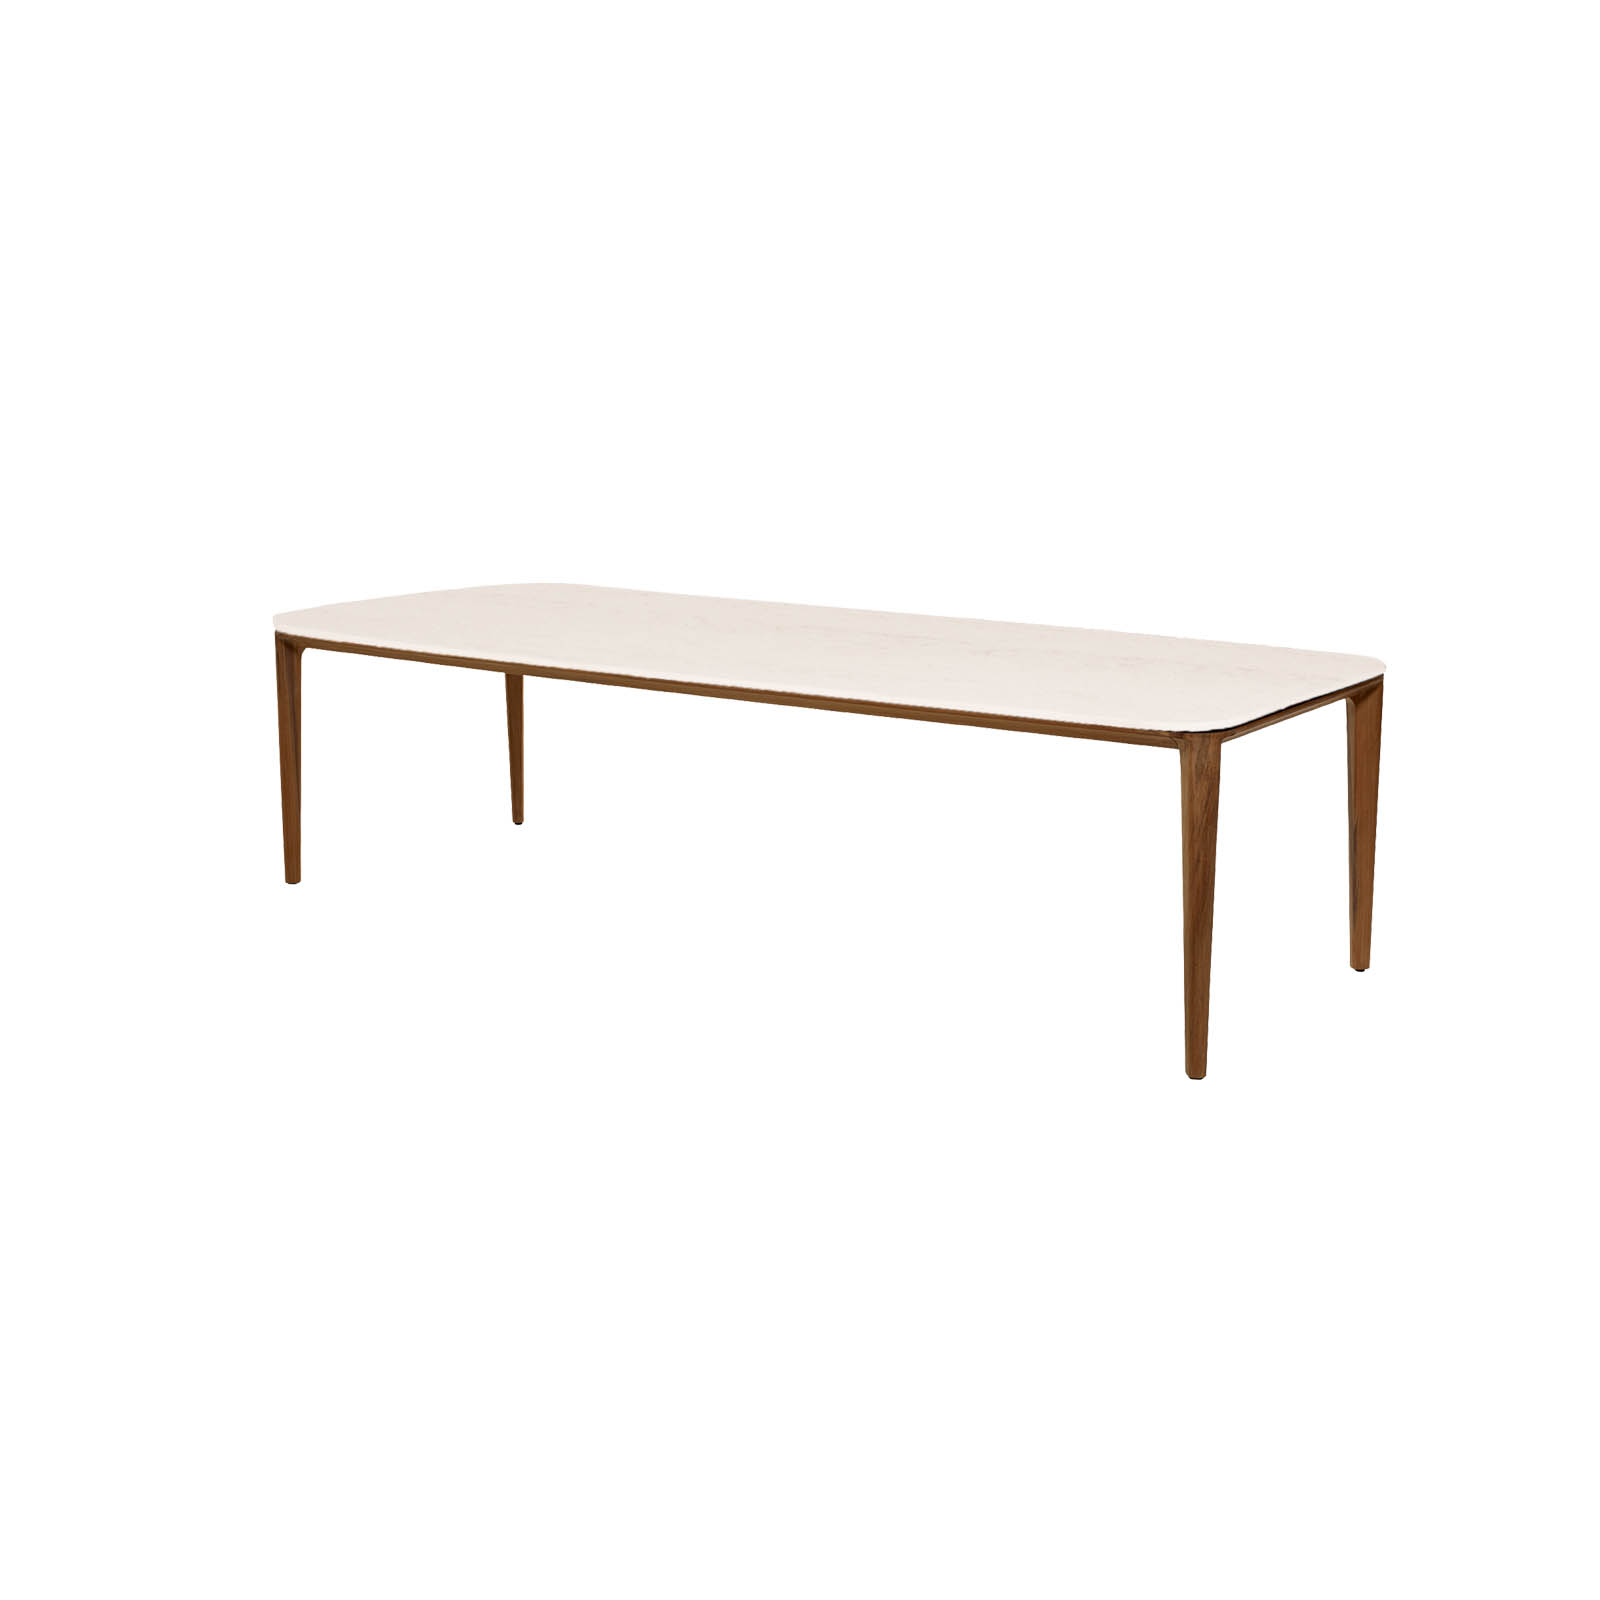 Aspect Tisch 280x100 cm aus Teak  mit Tischplatte aus Ceramic in Travert